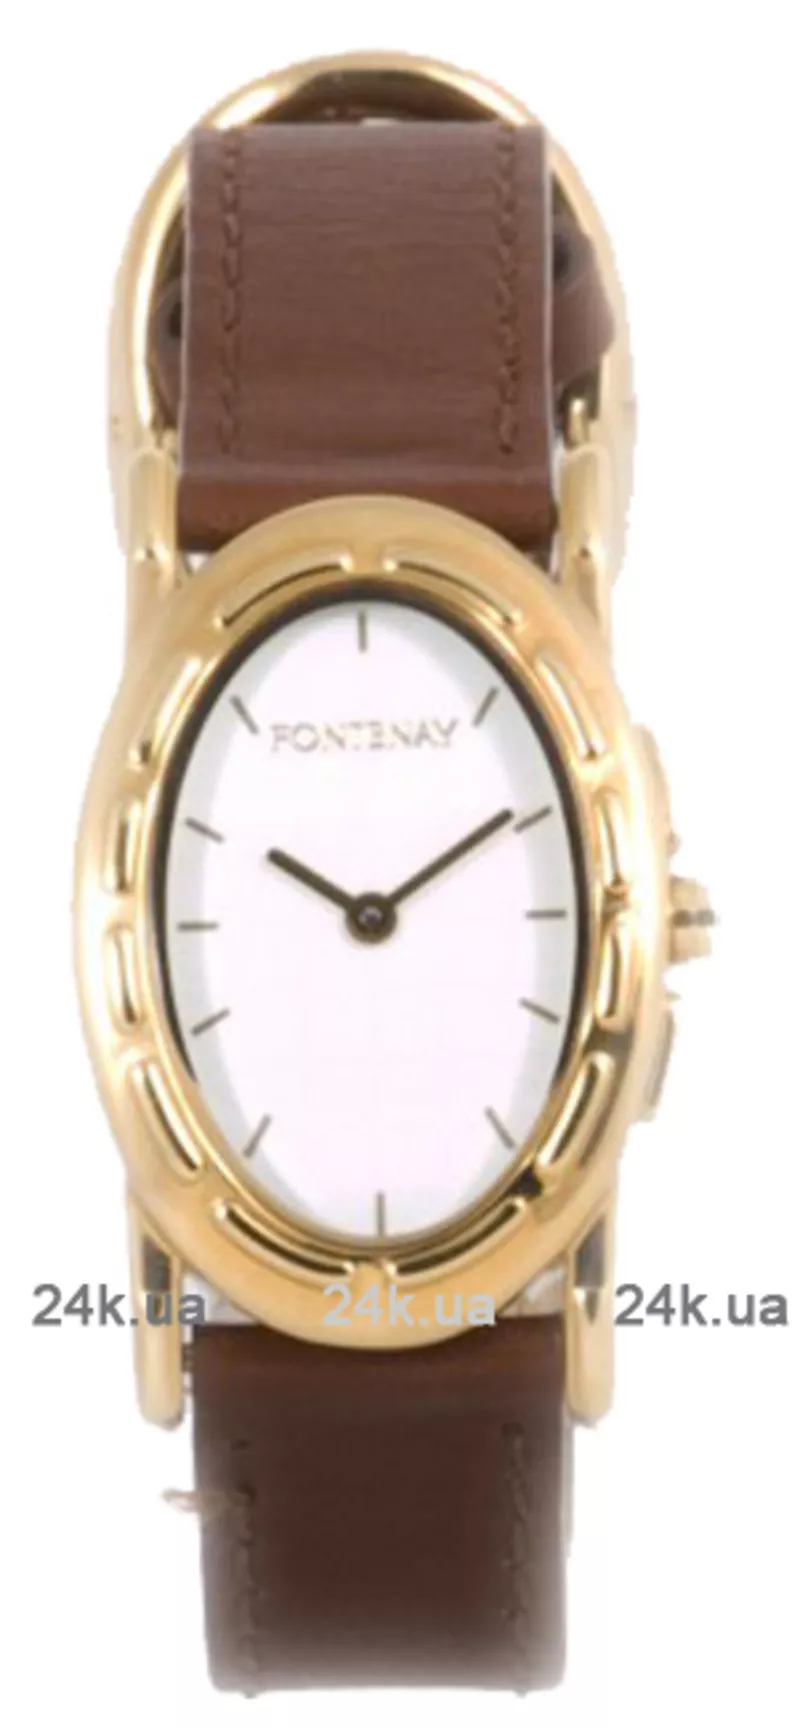 Часы Fontenay WG2208BS